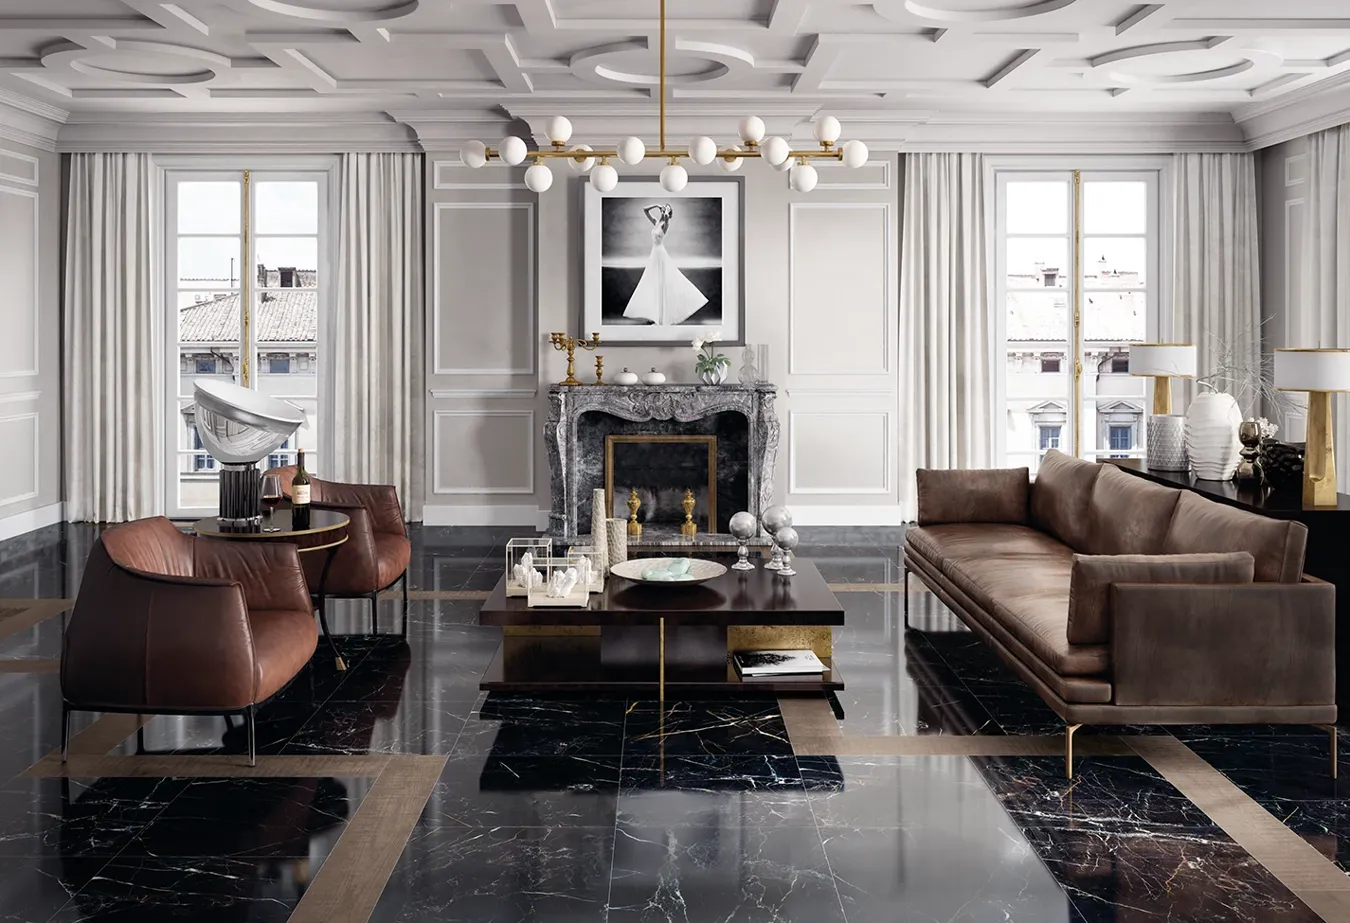 Intérieur de luxe avec sol en grès cérame effet marbre Port Laurent de la collection Elements Lux, agrémenté de meubles en cuir marron et de détails dorés.